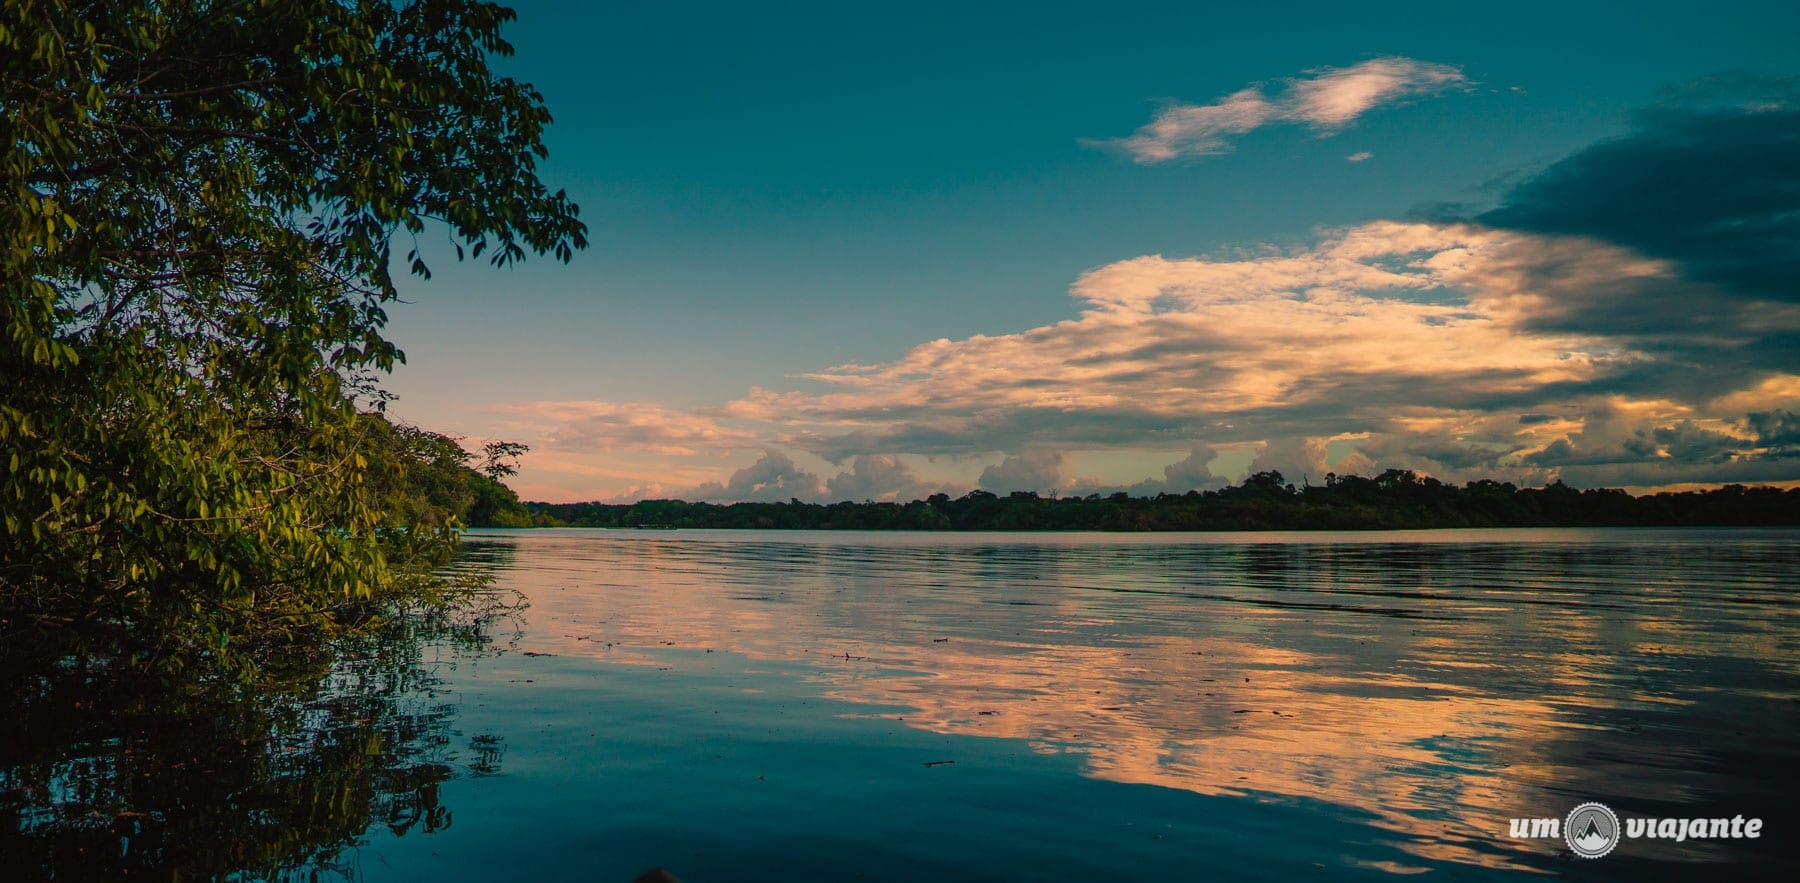 Quando ir para a Amazônia: clima e melhor época para viajar